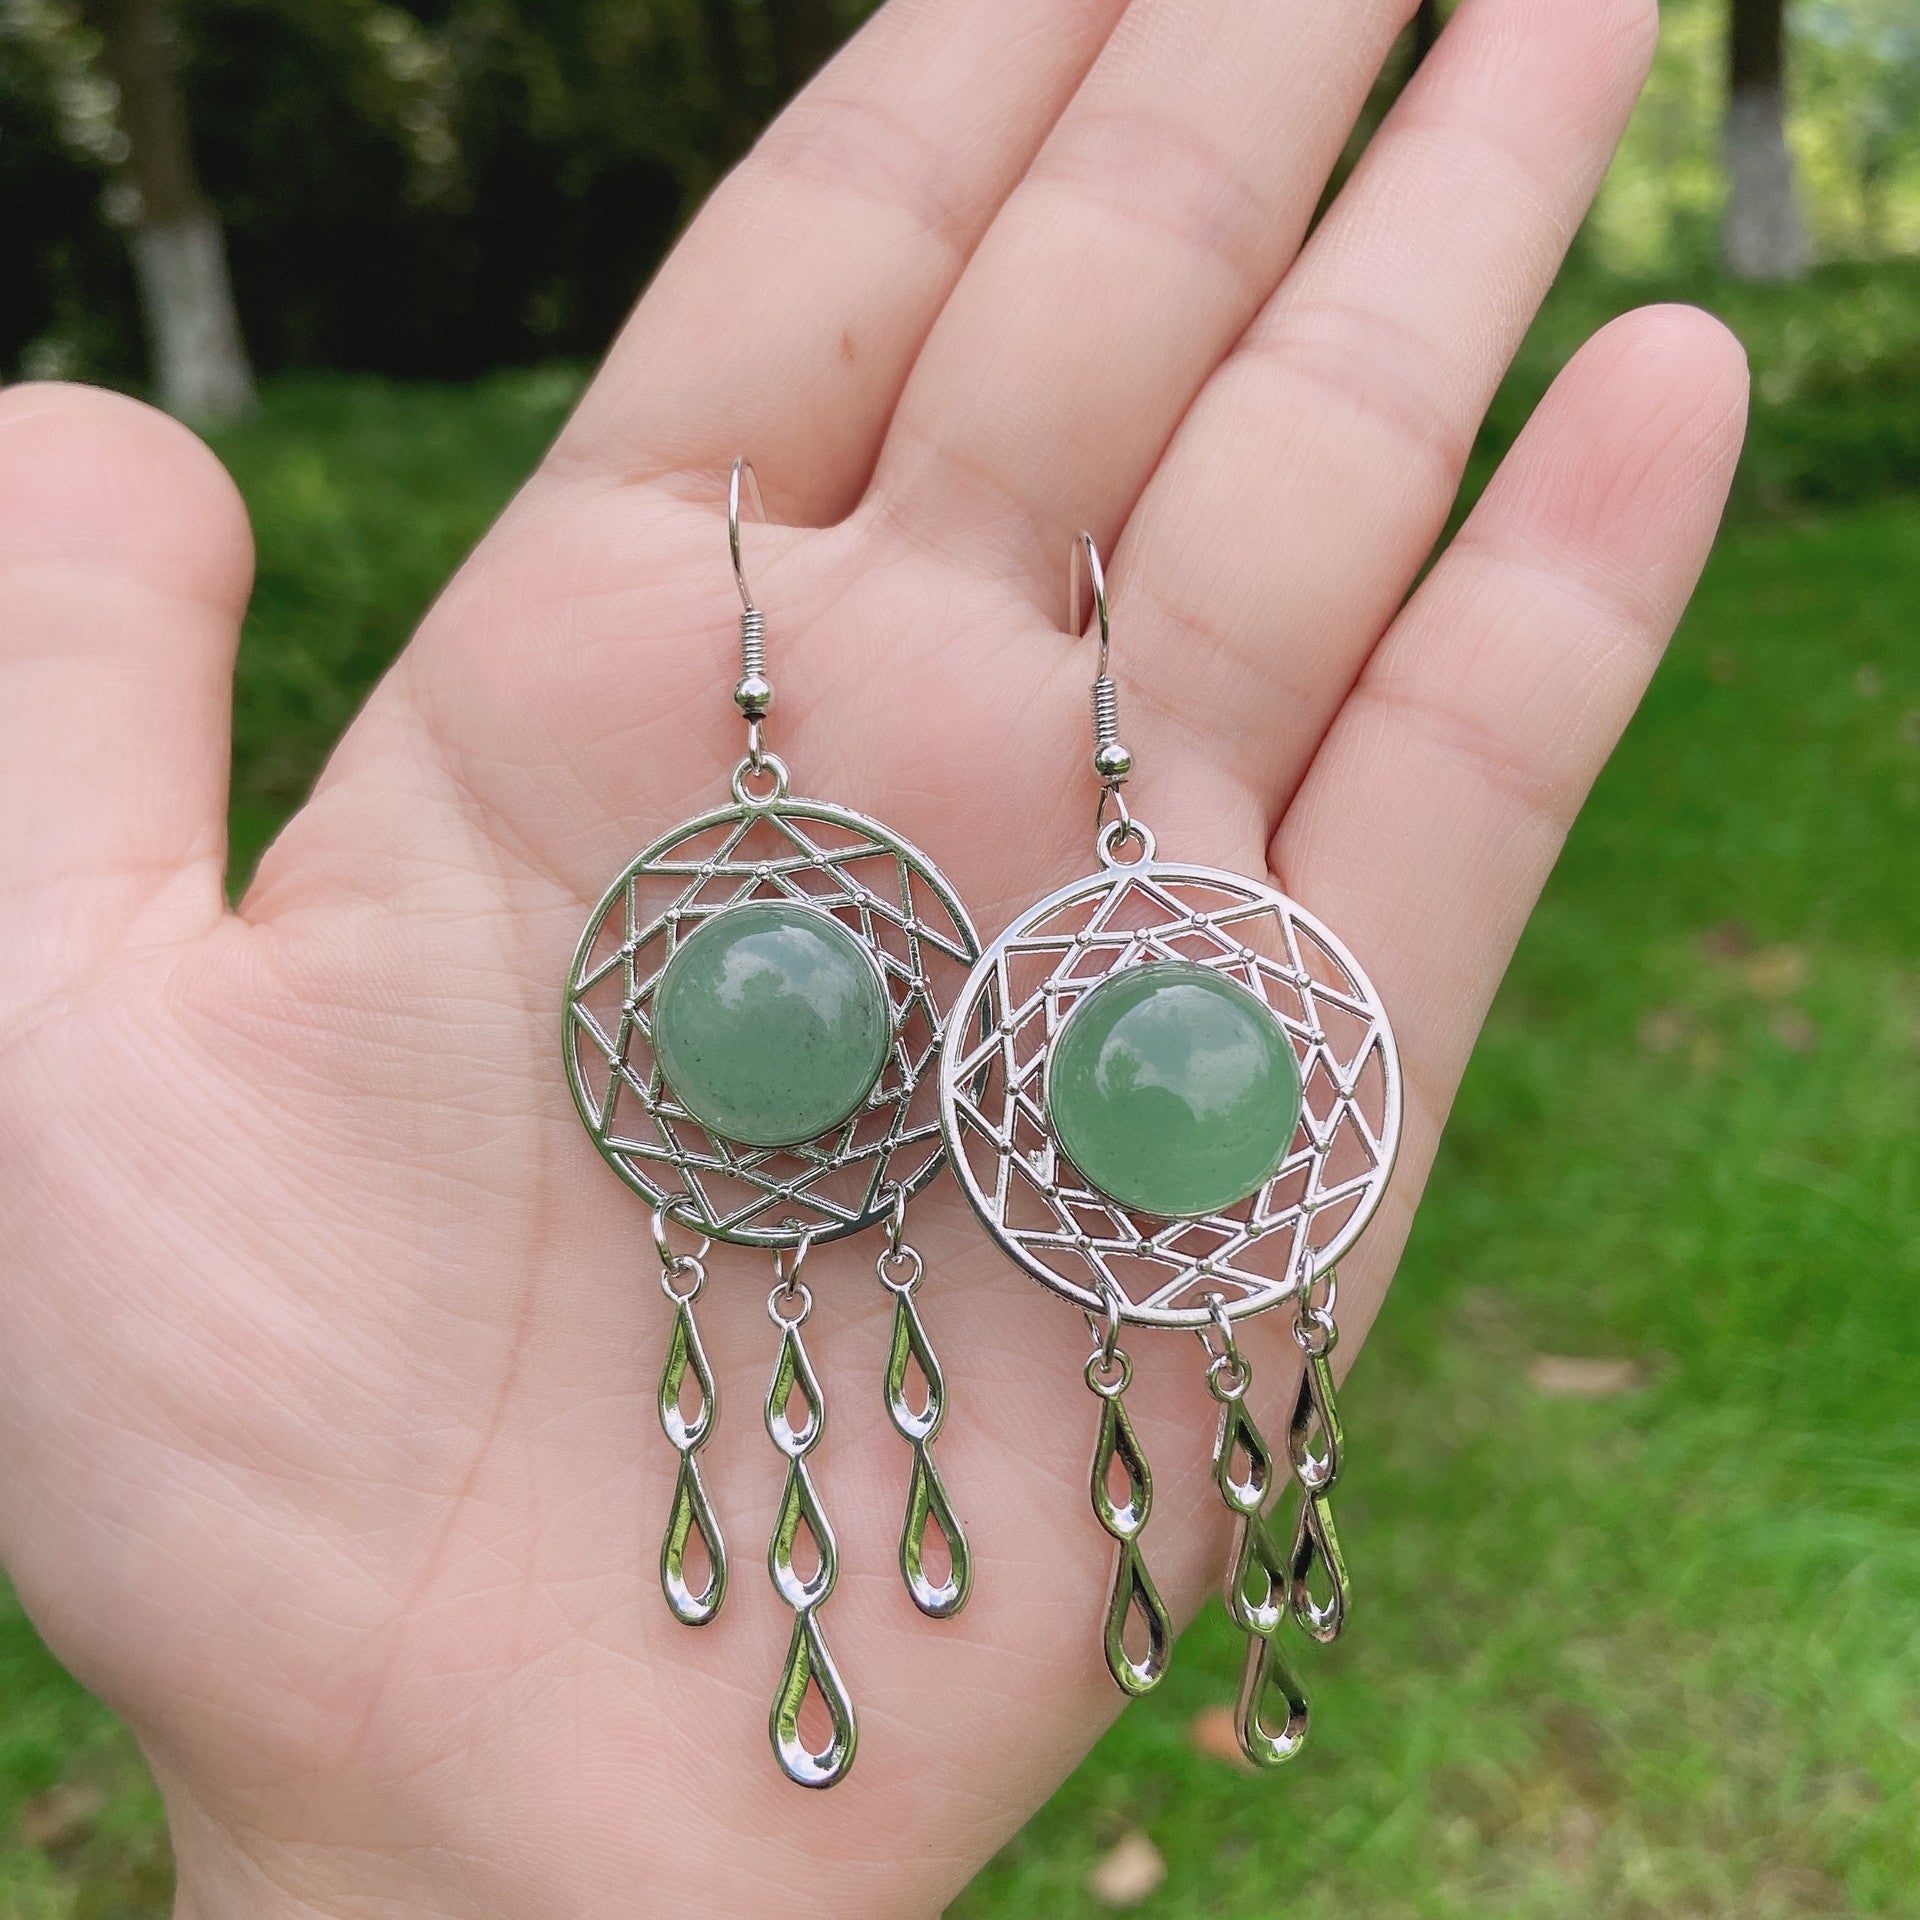 Rock crystal jade dream catcher earrings